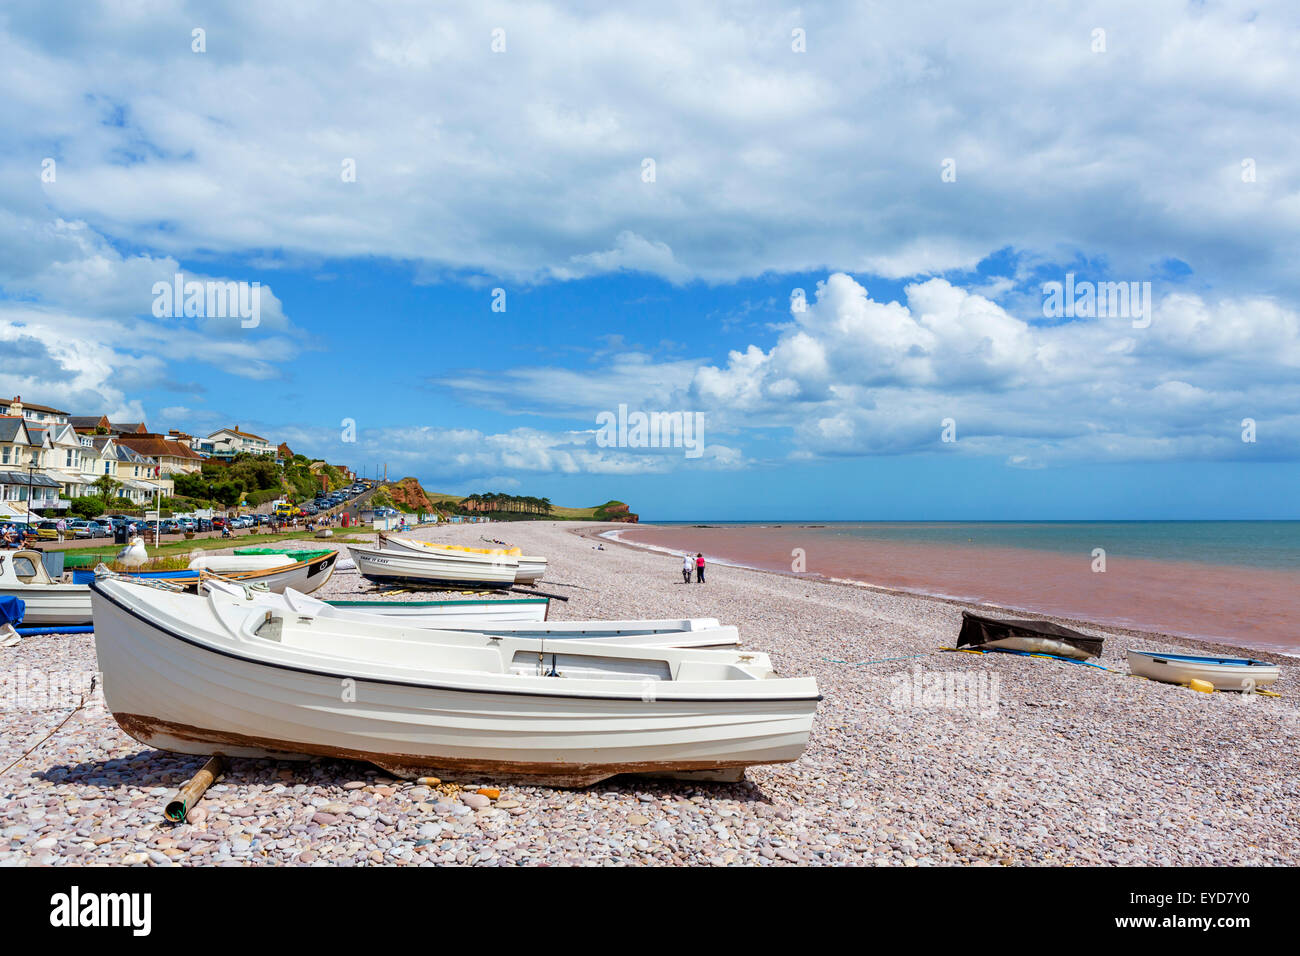 La plage de galets de Budleigh Salterton, Devon, England, UK Banque D'Images